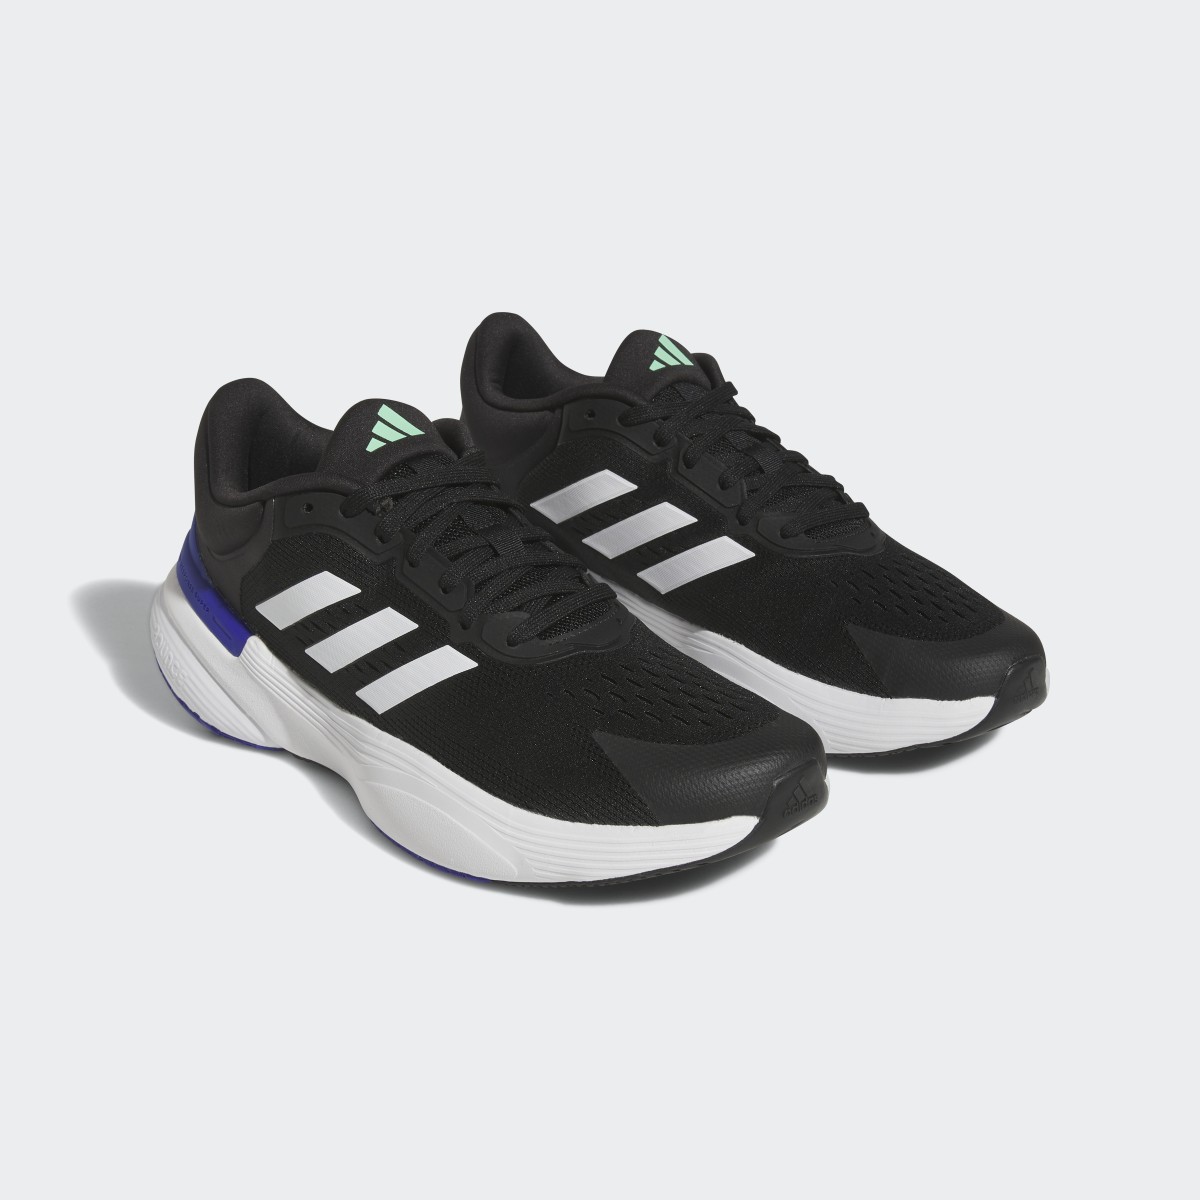 Adidas Response Super 2.0 Ayakkabı. 5